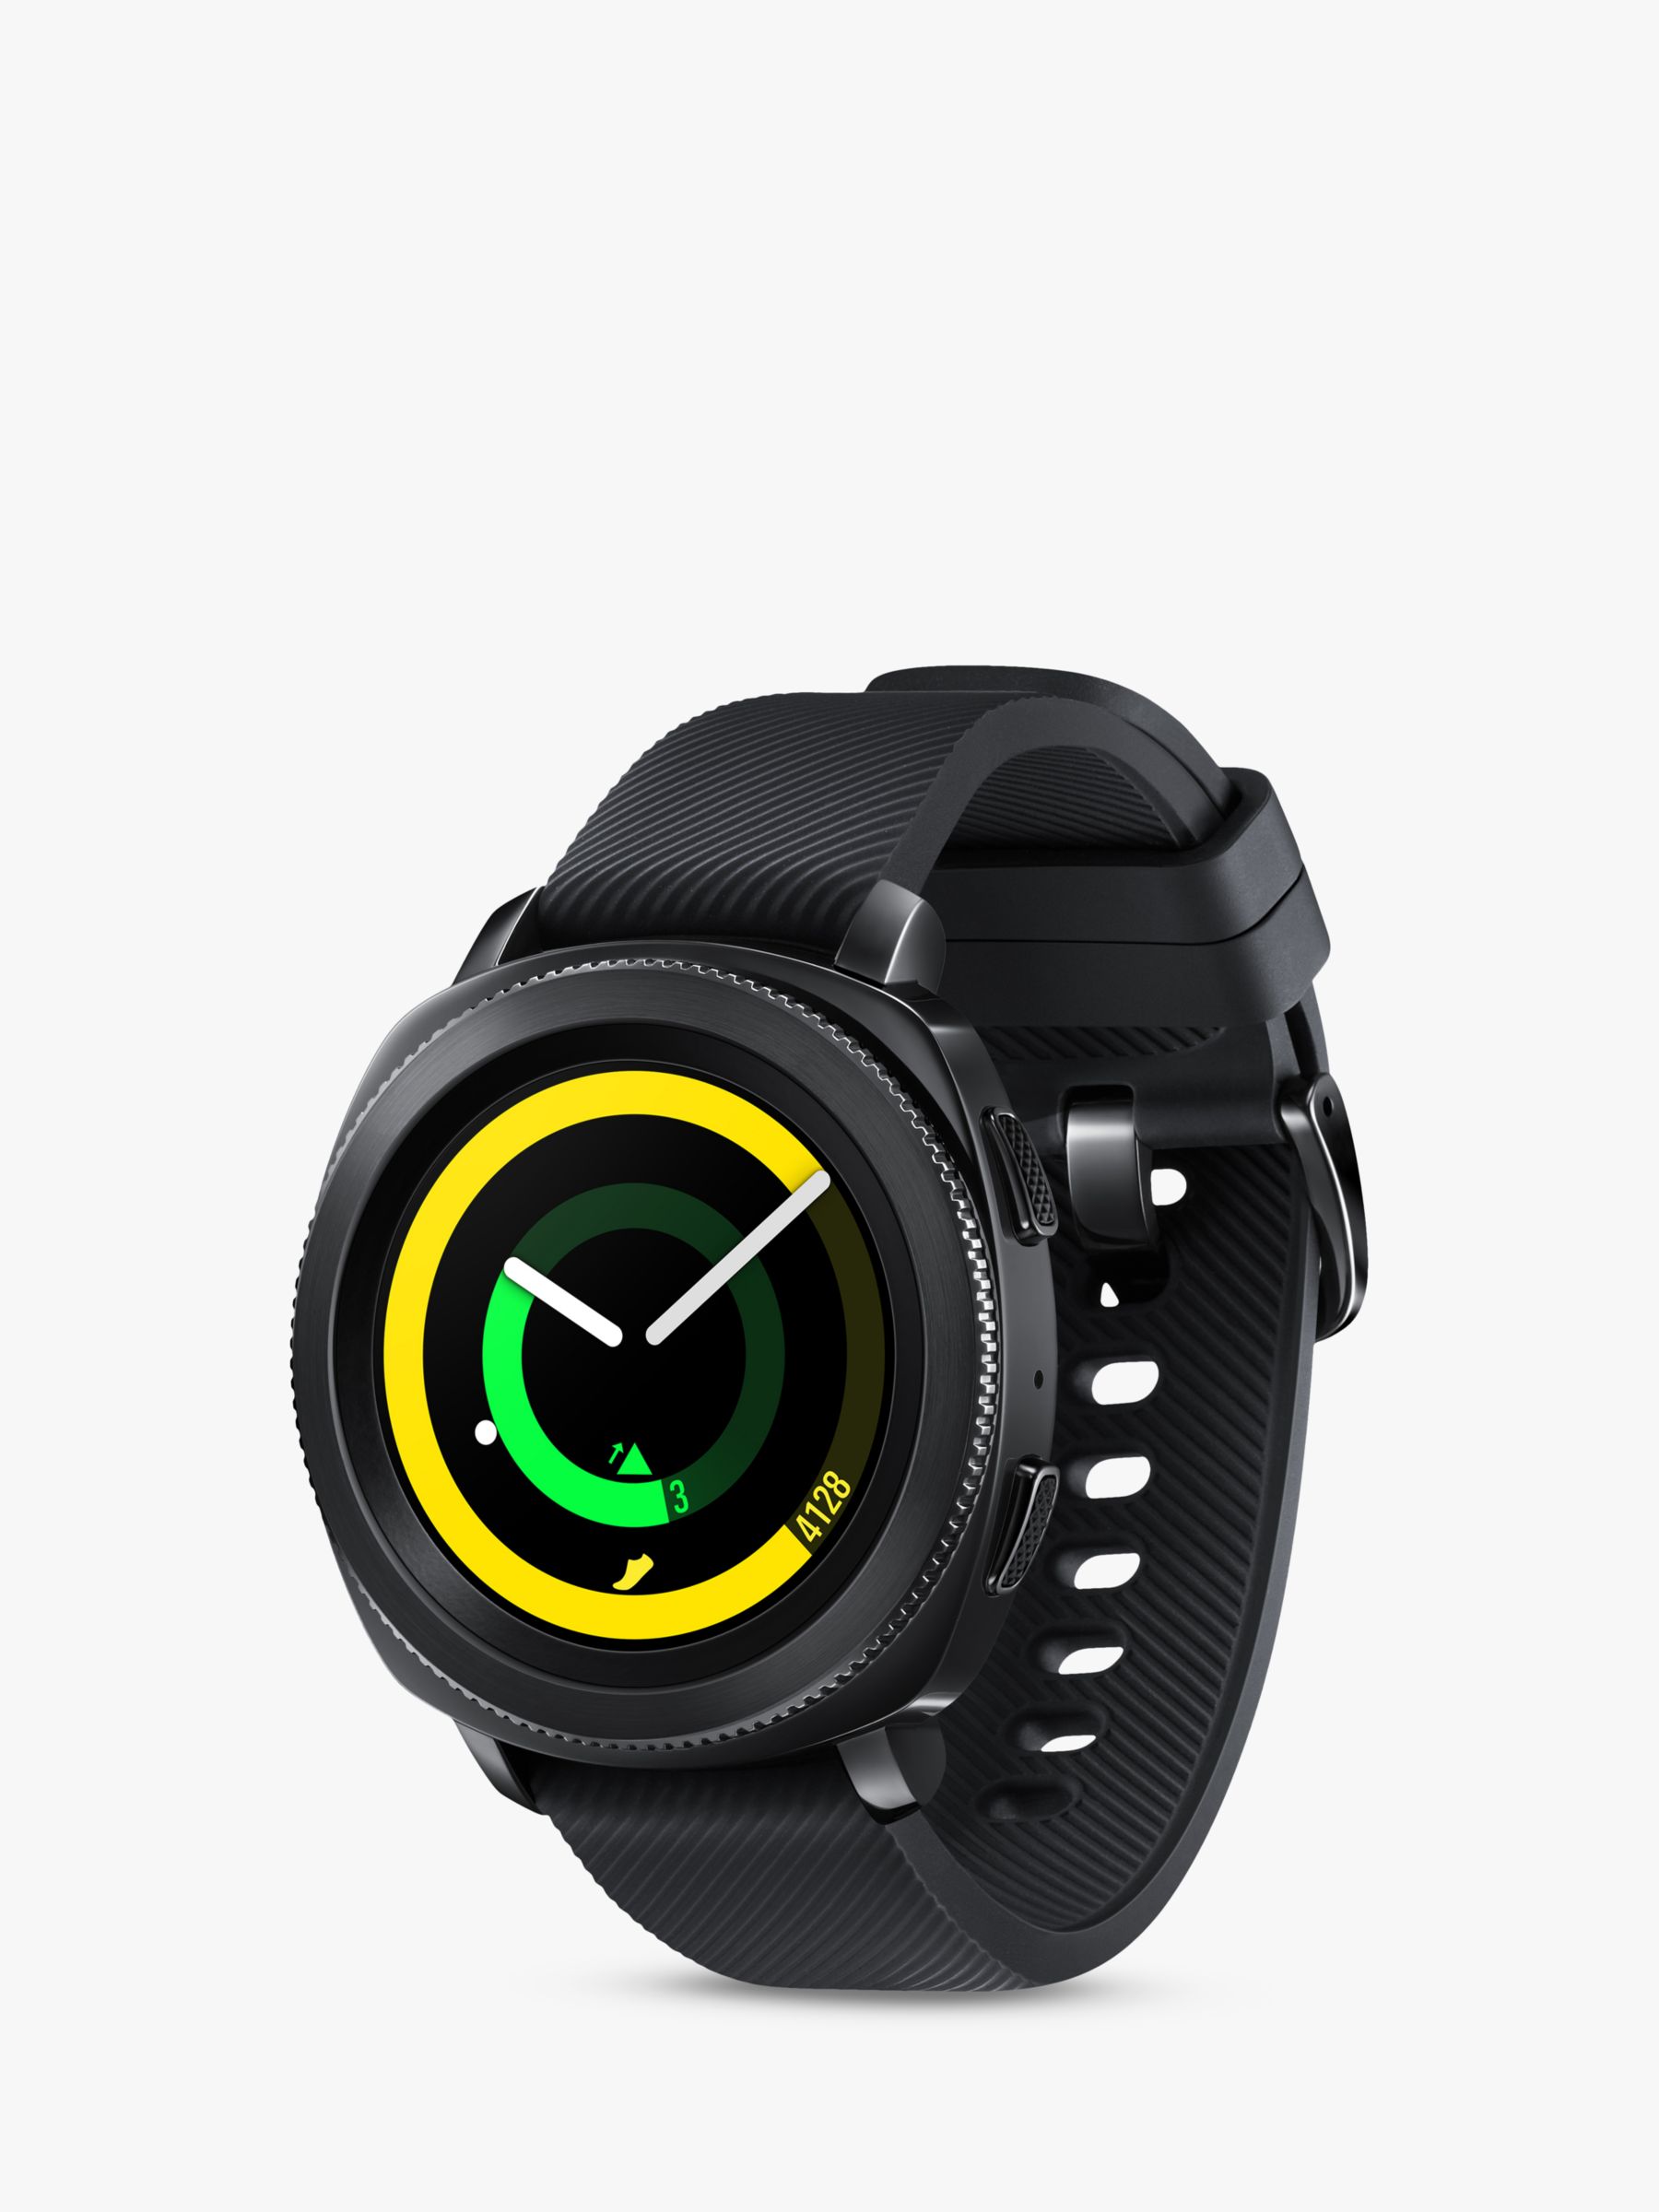 Samsung Gear Sport Smartwatch with 